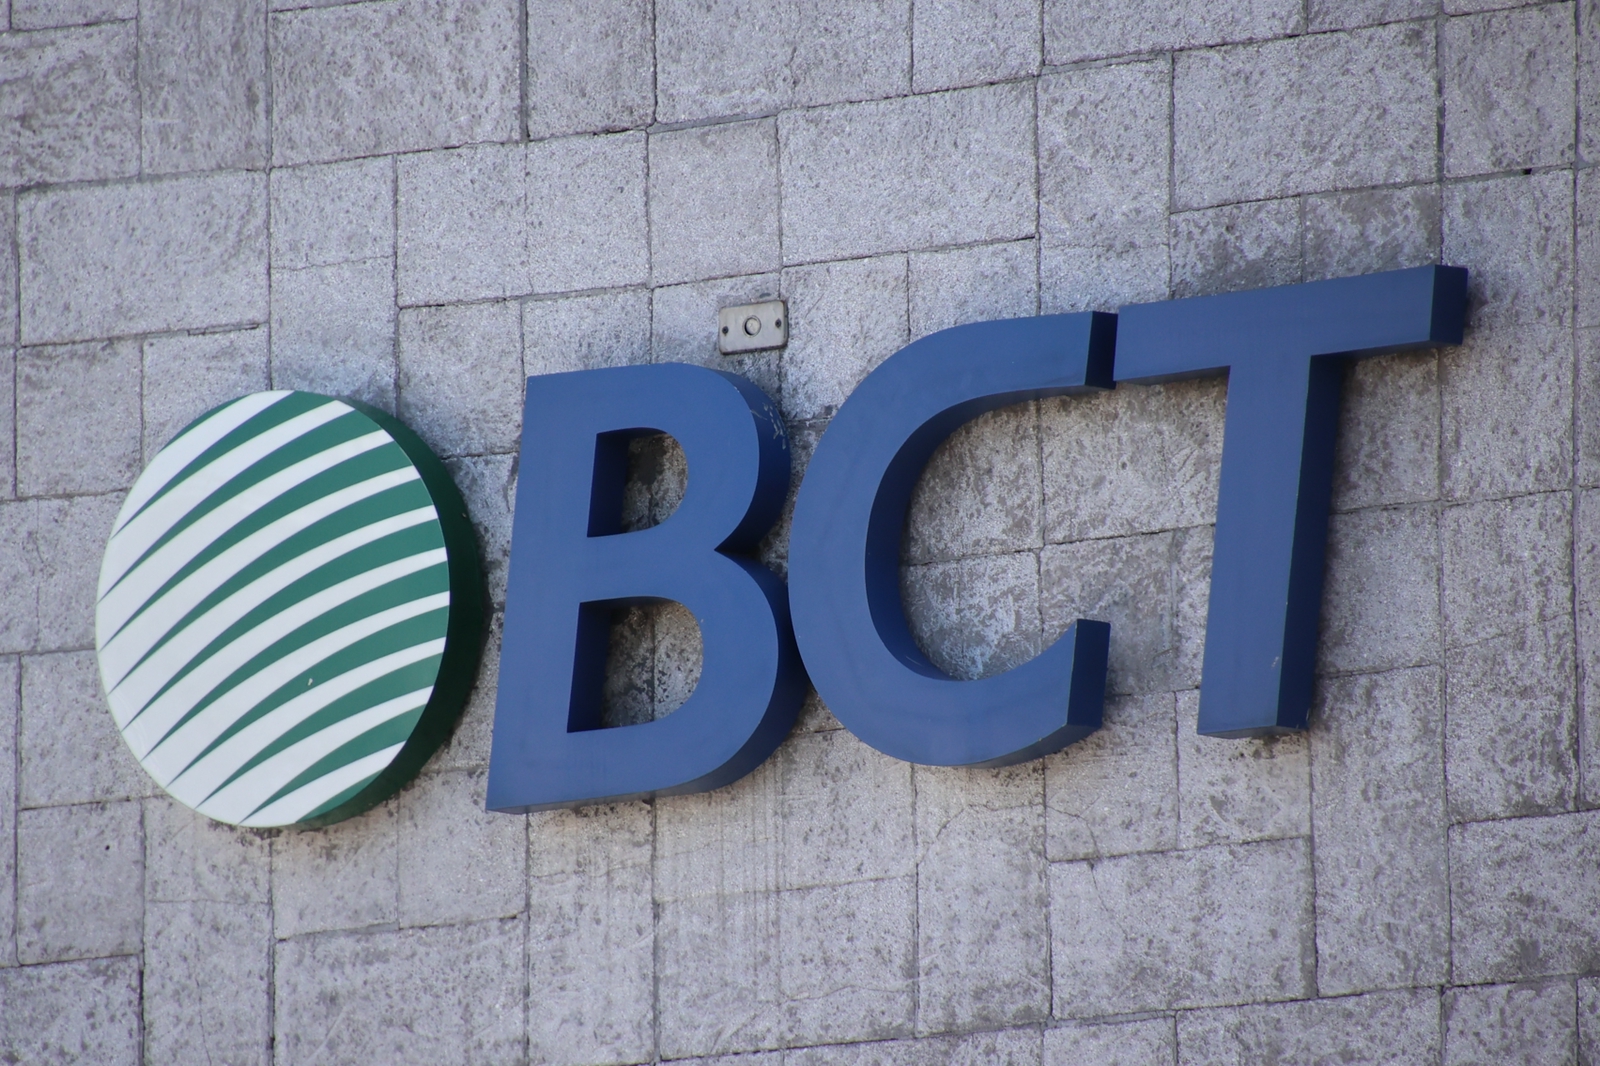 Expediente de supuesta evasión fiscal contra BCT volverá a la Fiscalía tras rechazo de Juzgado a solicitud de desestimación